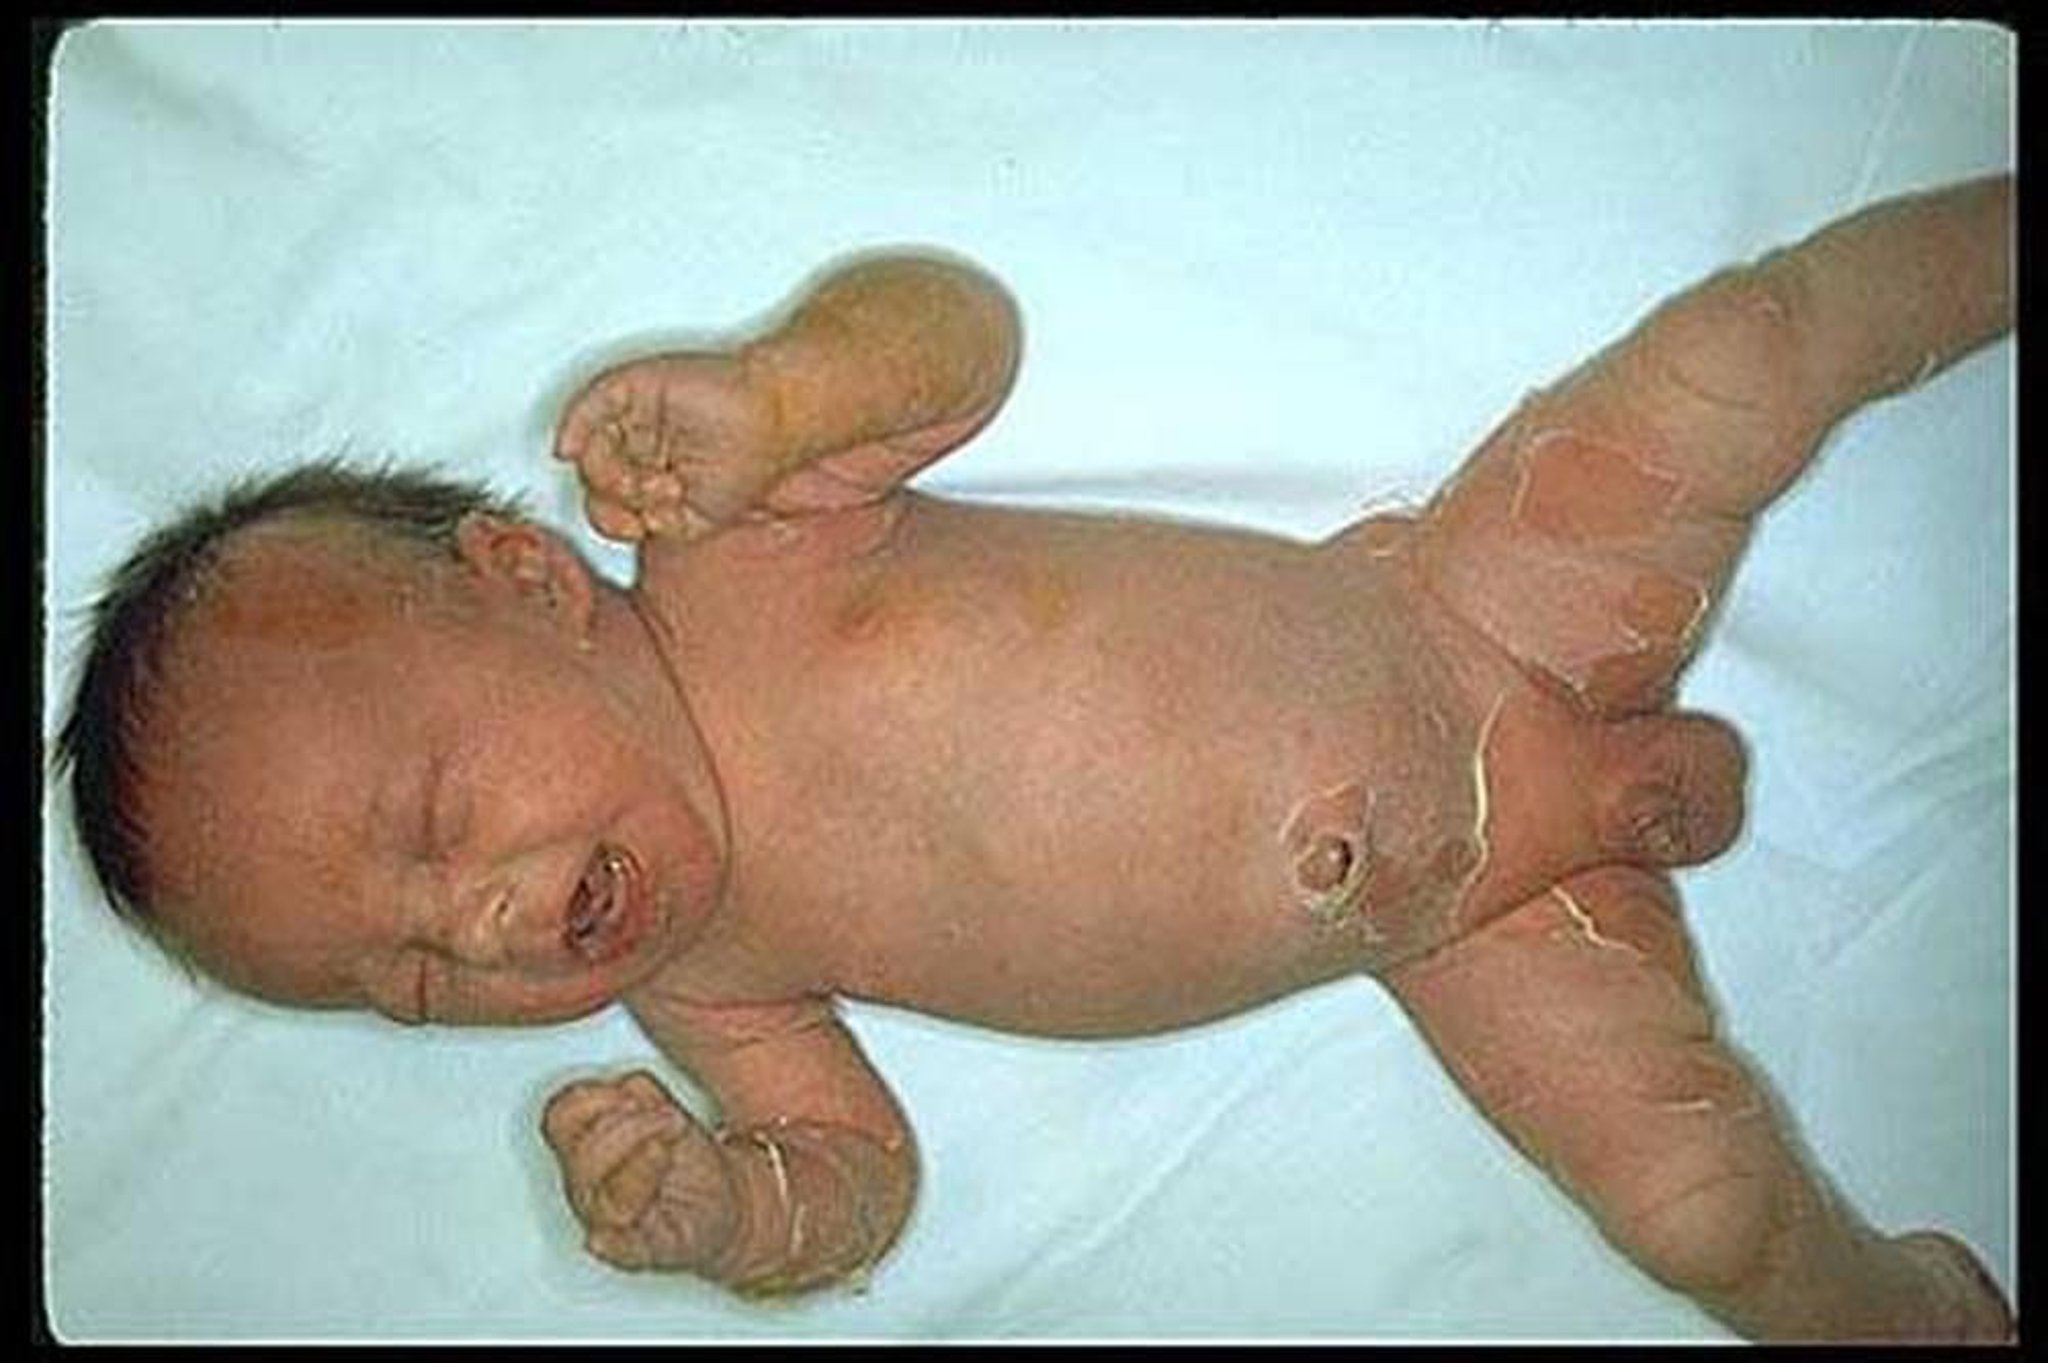 Sindrome stafilococcica della cute ustionata (neonato)